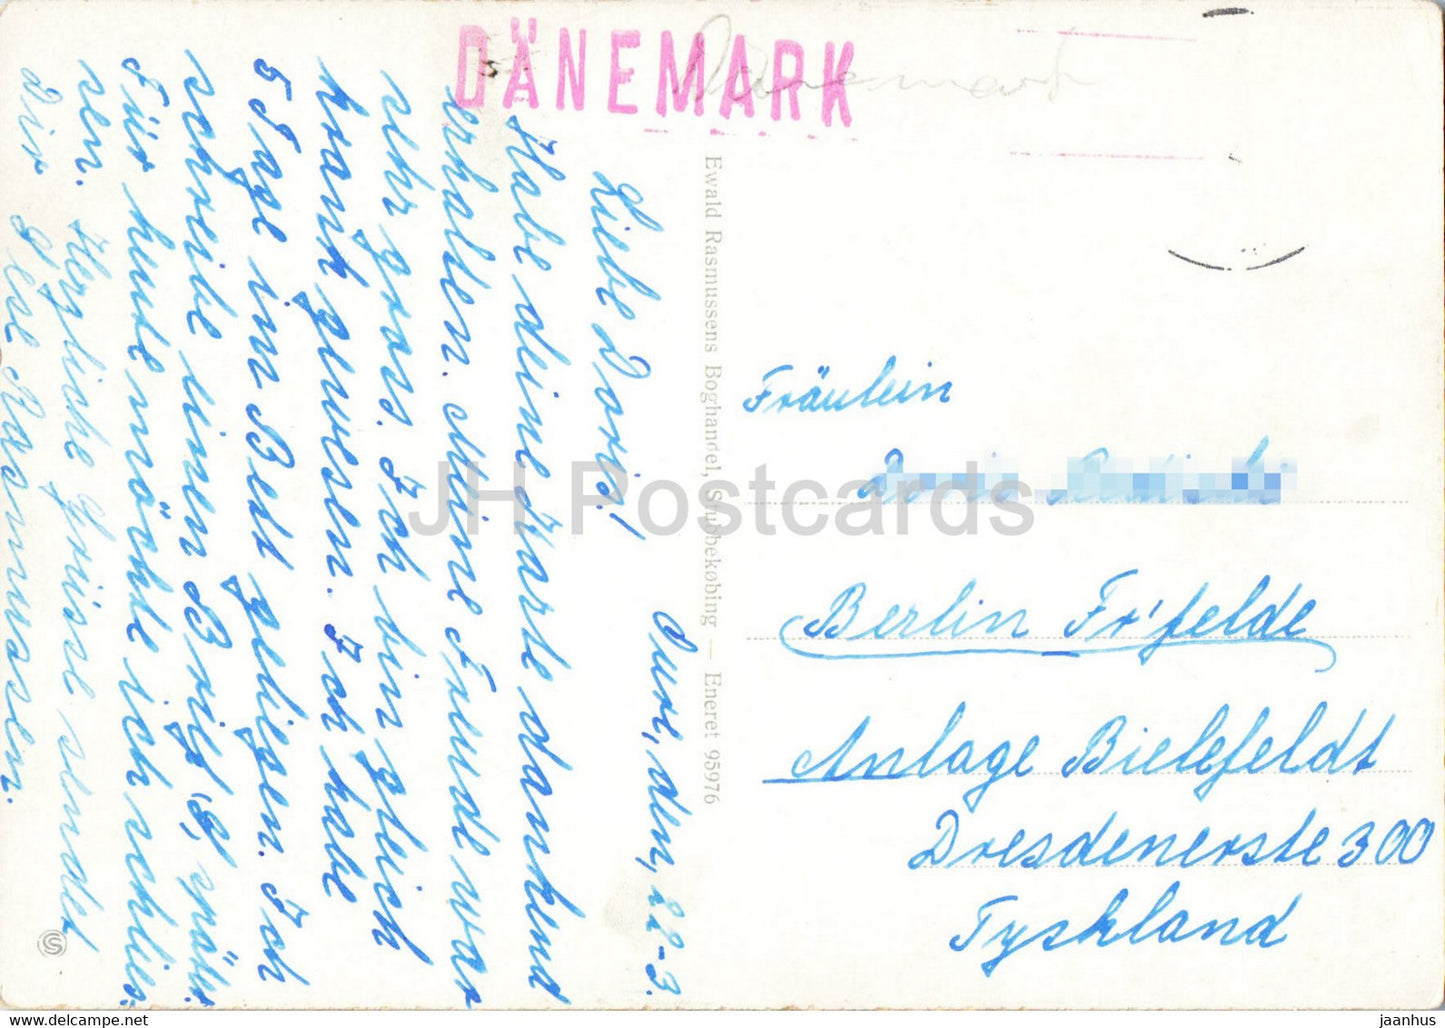 Bogo Havn - Segelboot - Schiff - Fähre Gudrun - alte Postkarte - Dänemark - gebraucht